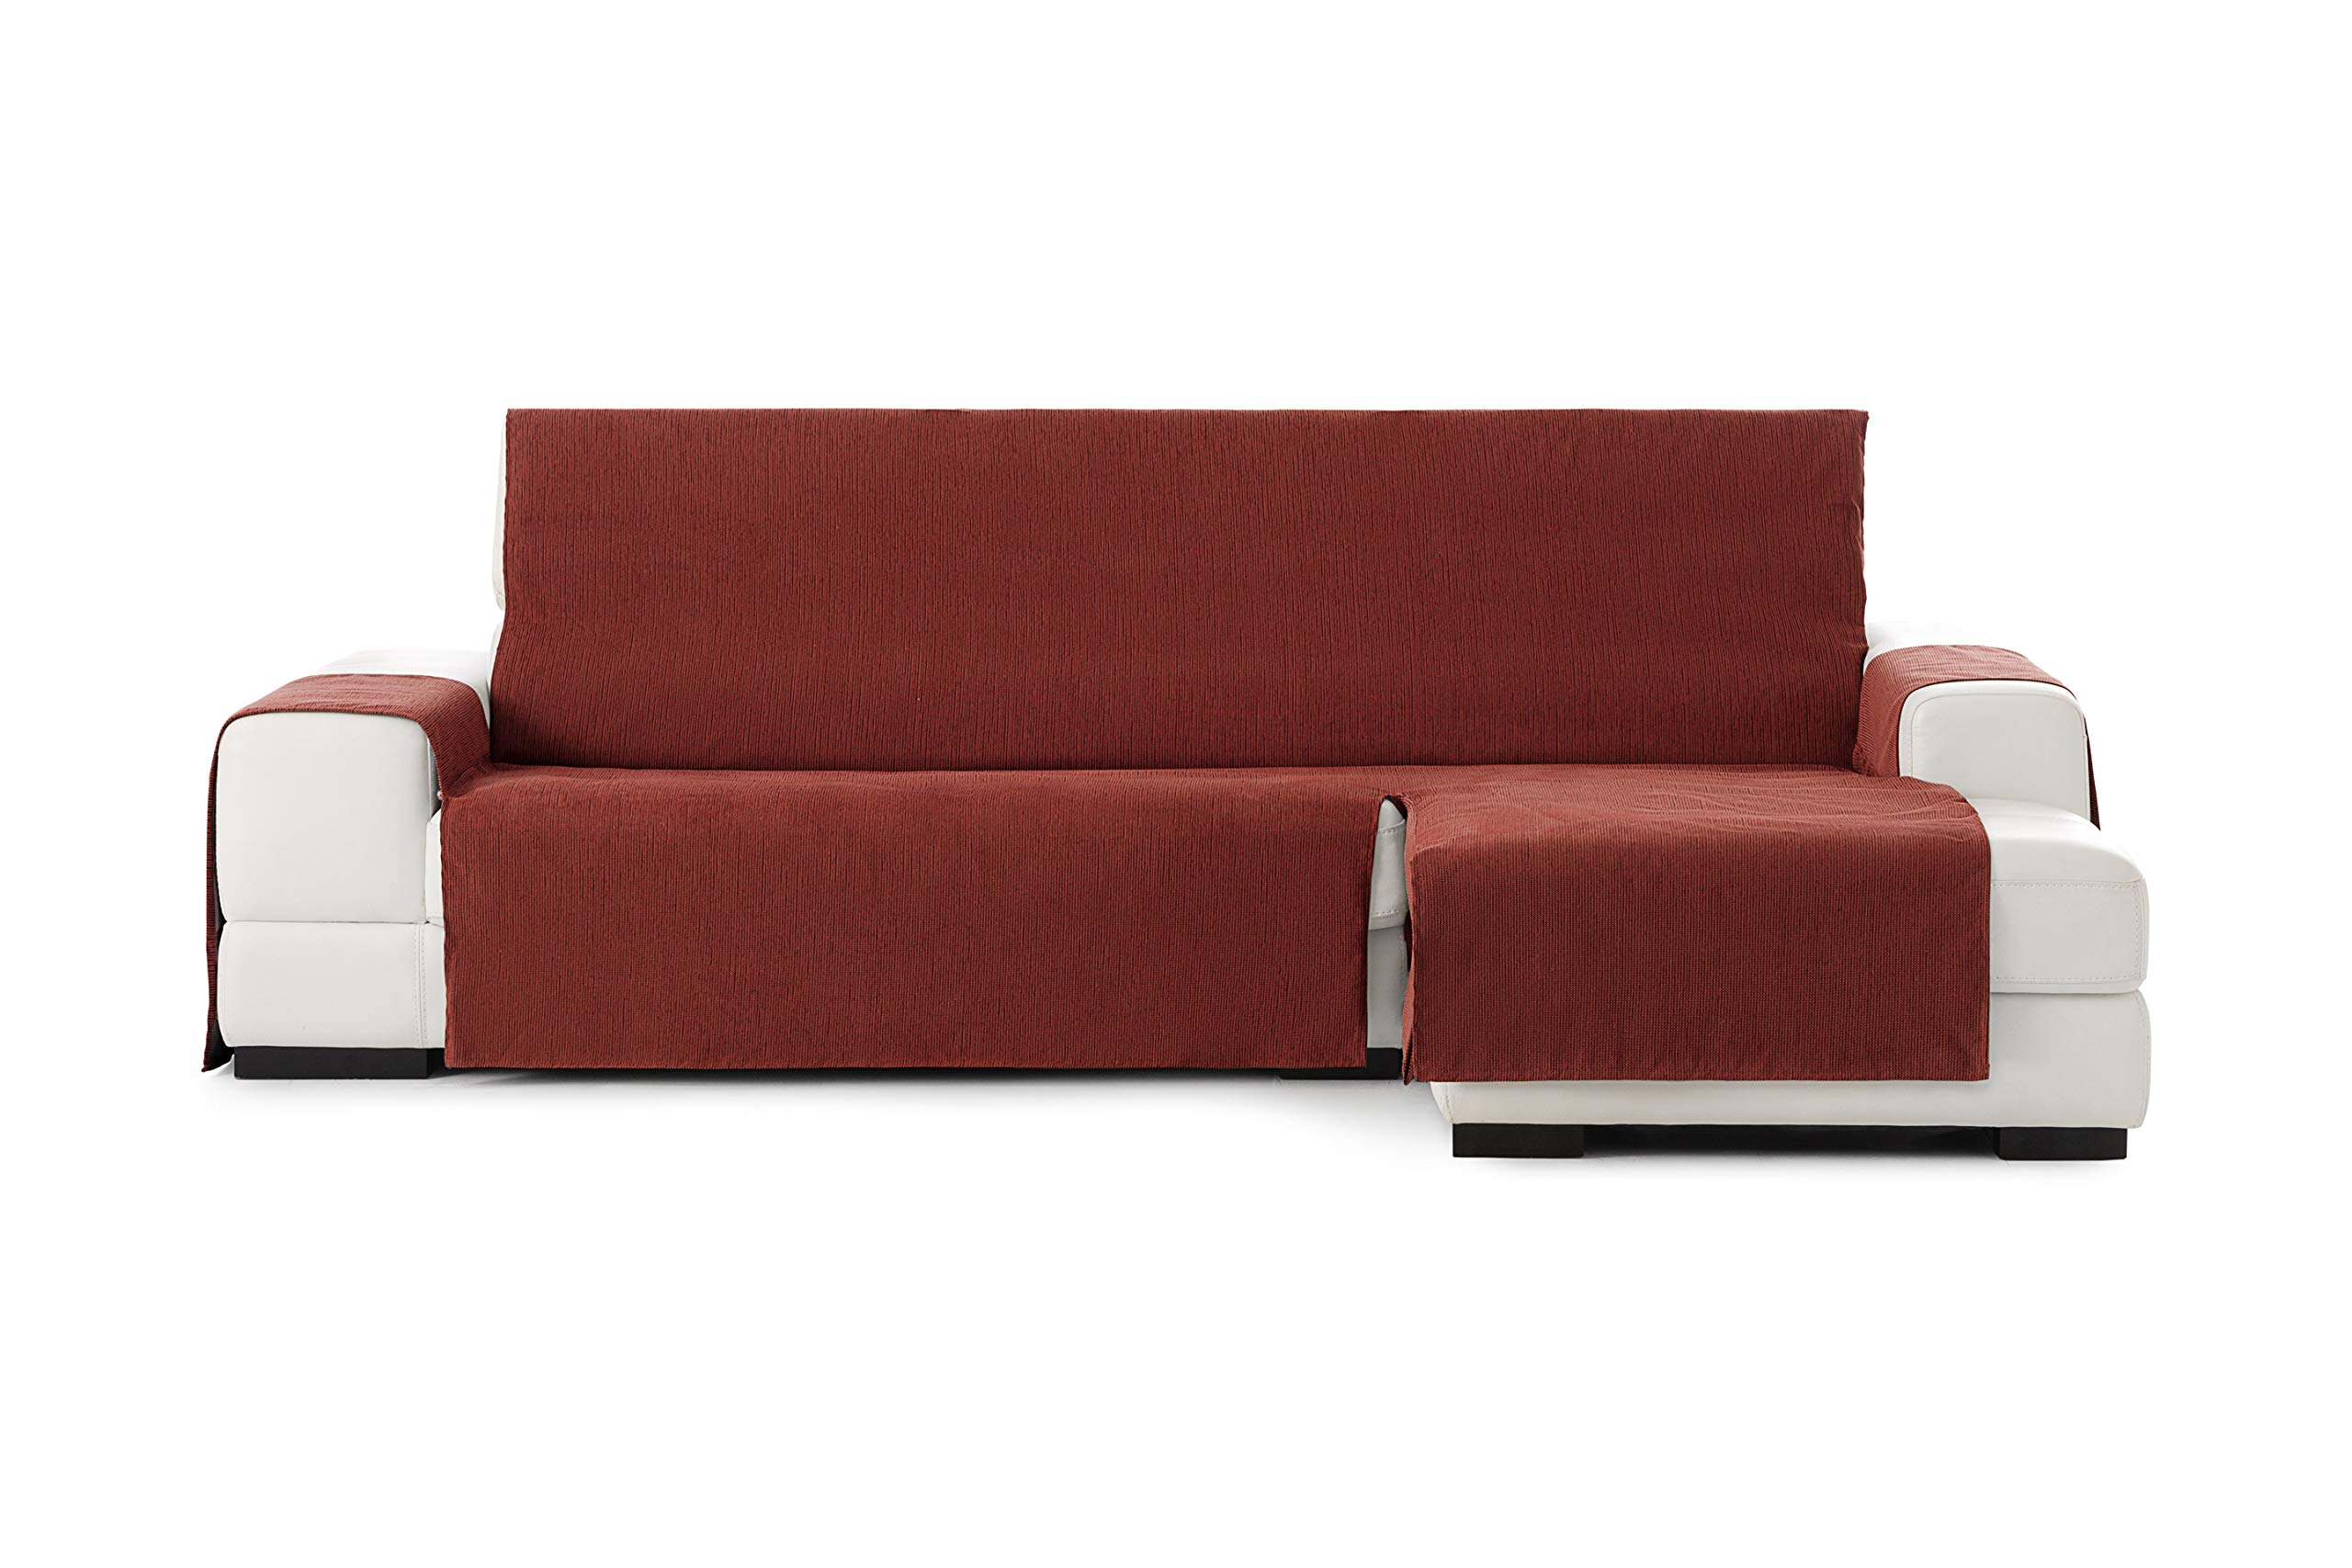 Eysa Loira Protect wasserdichte und atmungsaktive Sofa überwurf, 65% Polyester 35% Baumwolle, orange, 290 cm